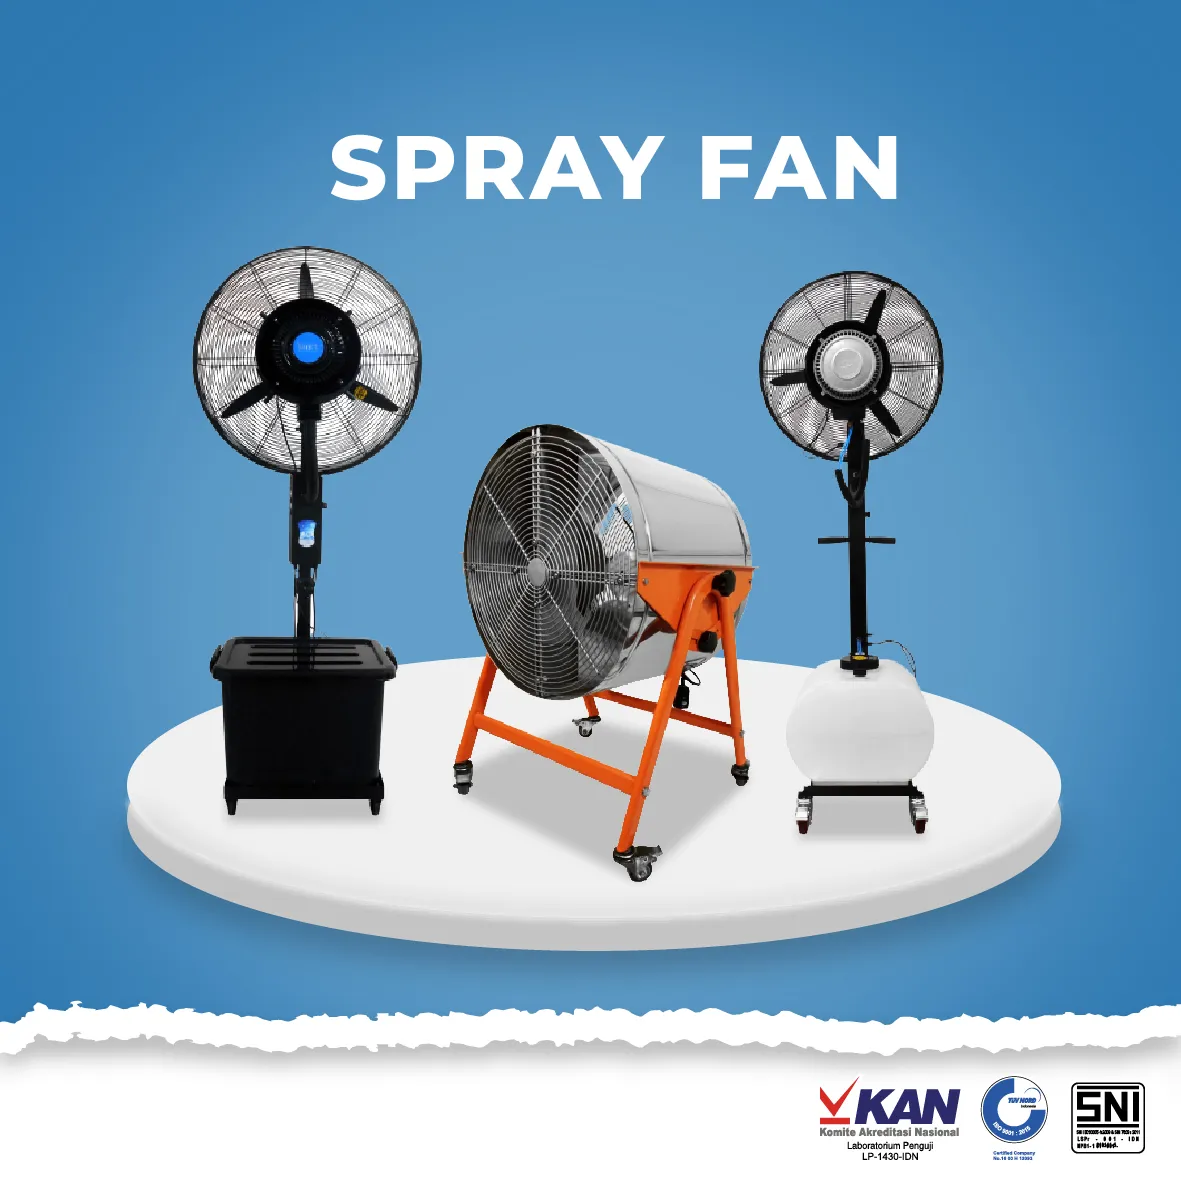  Spray Fan spray fan template cover website 01